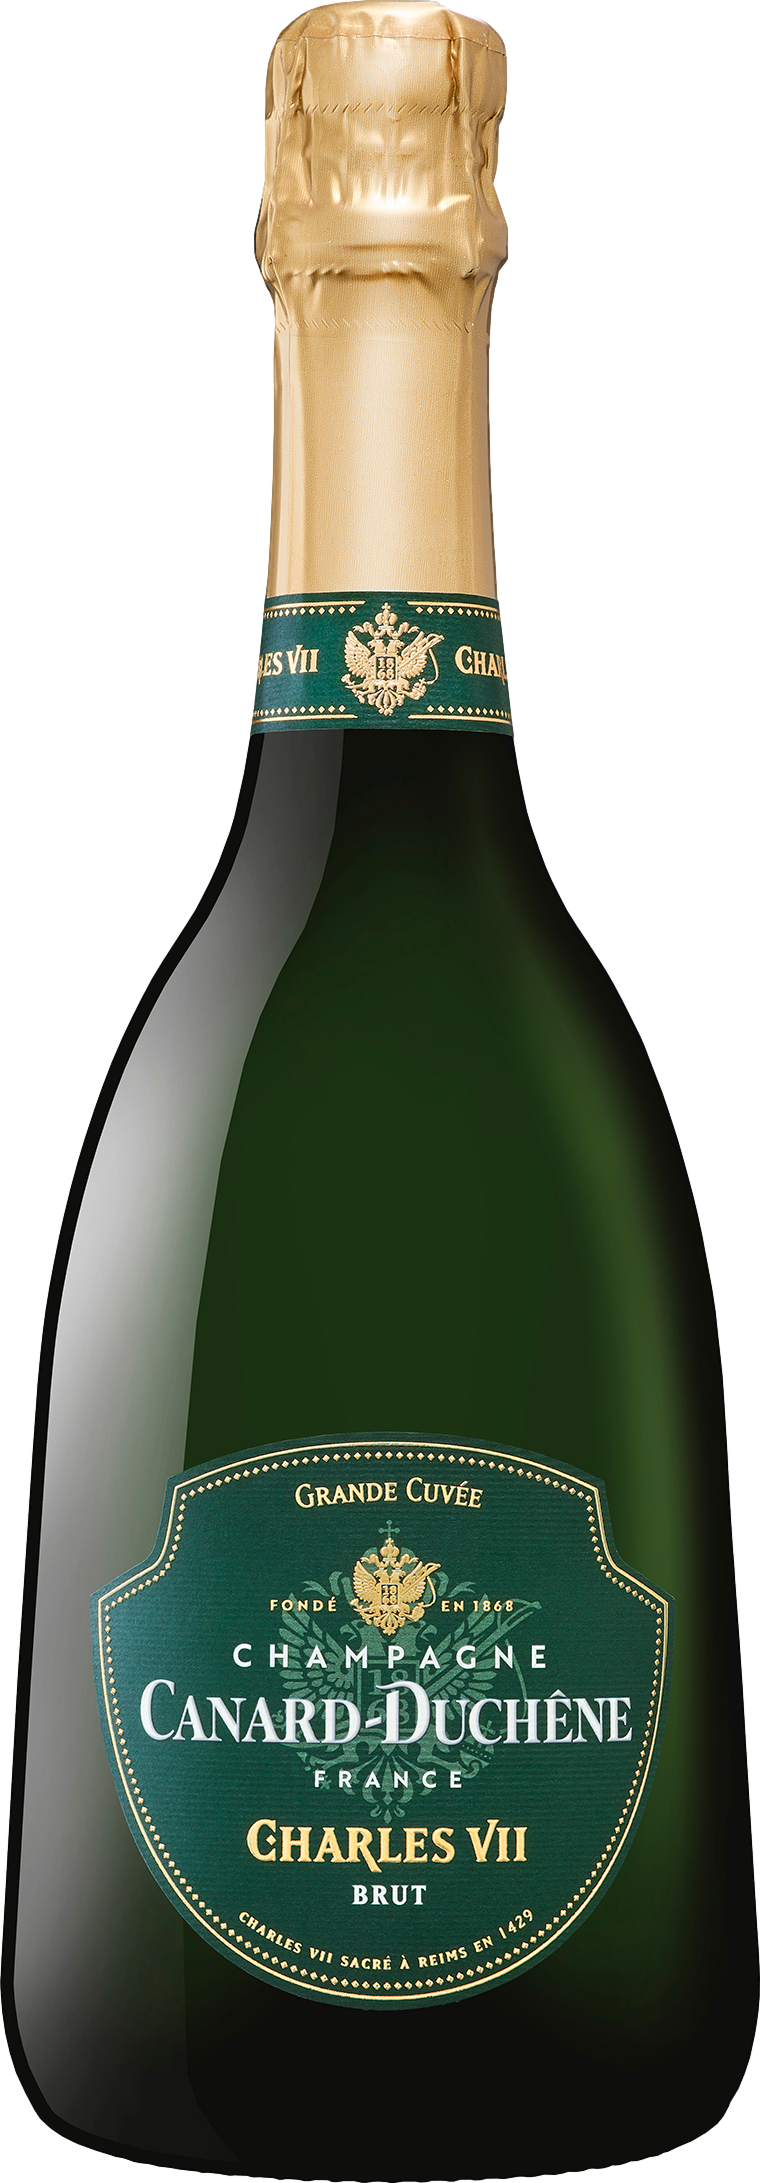 Champagne Canard-Duchene Grande Cuvee Charles VII Brut Šumivé 12.0% 0.75 l